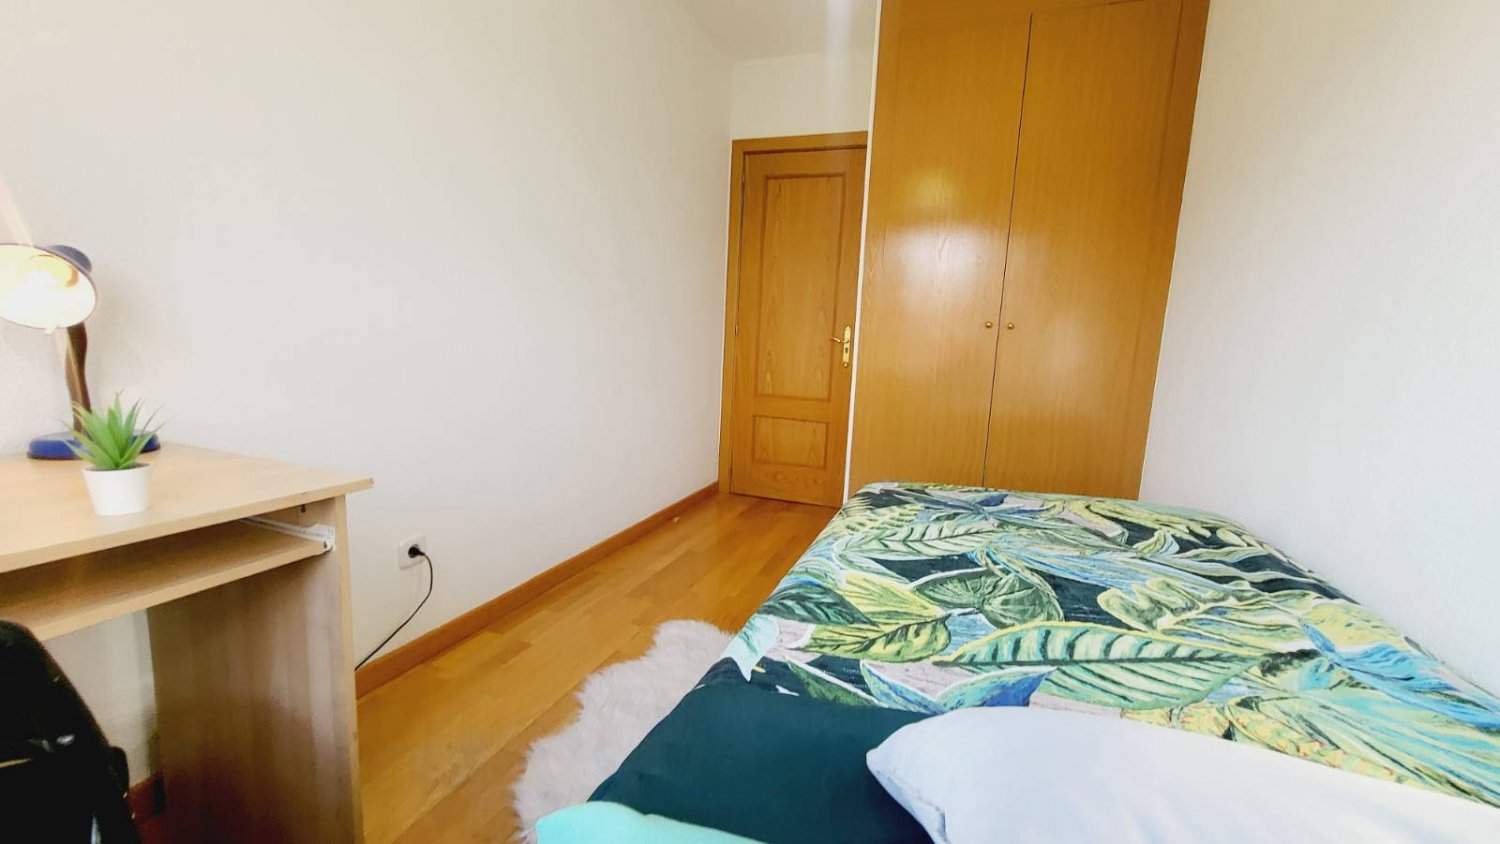 Habitaciones en piso compartido en Madrid - SCH3